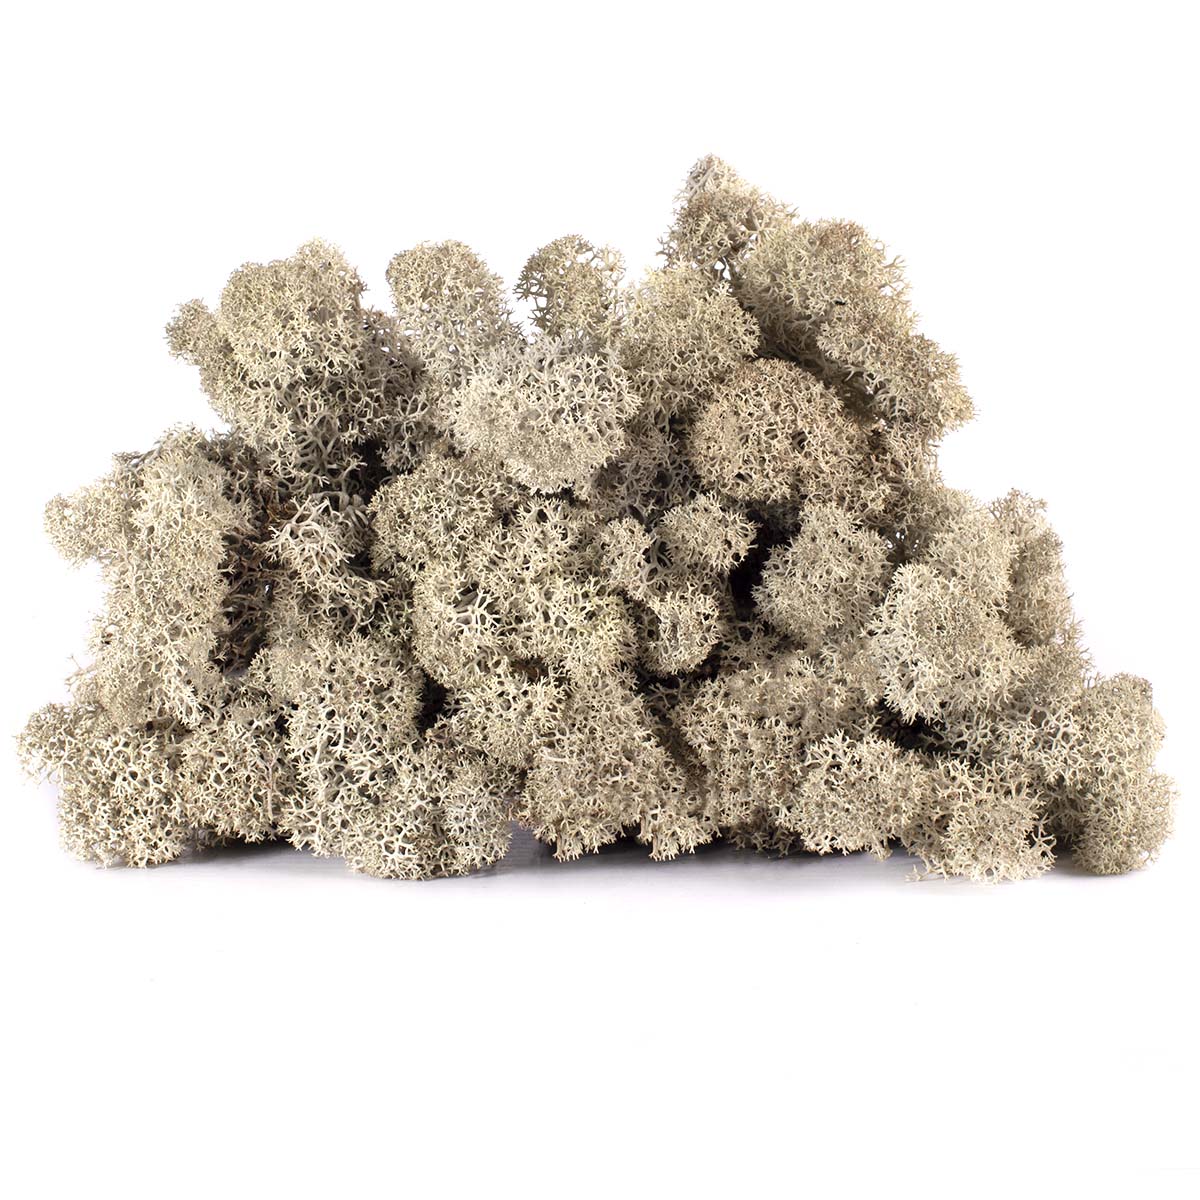 Lic/0575 lichen stabilisée gris argenté w-box 0,5 kg